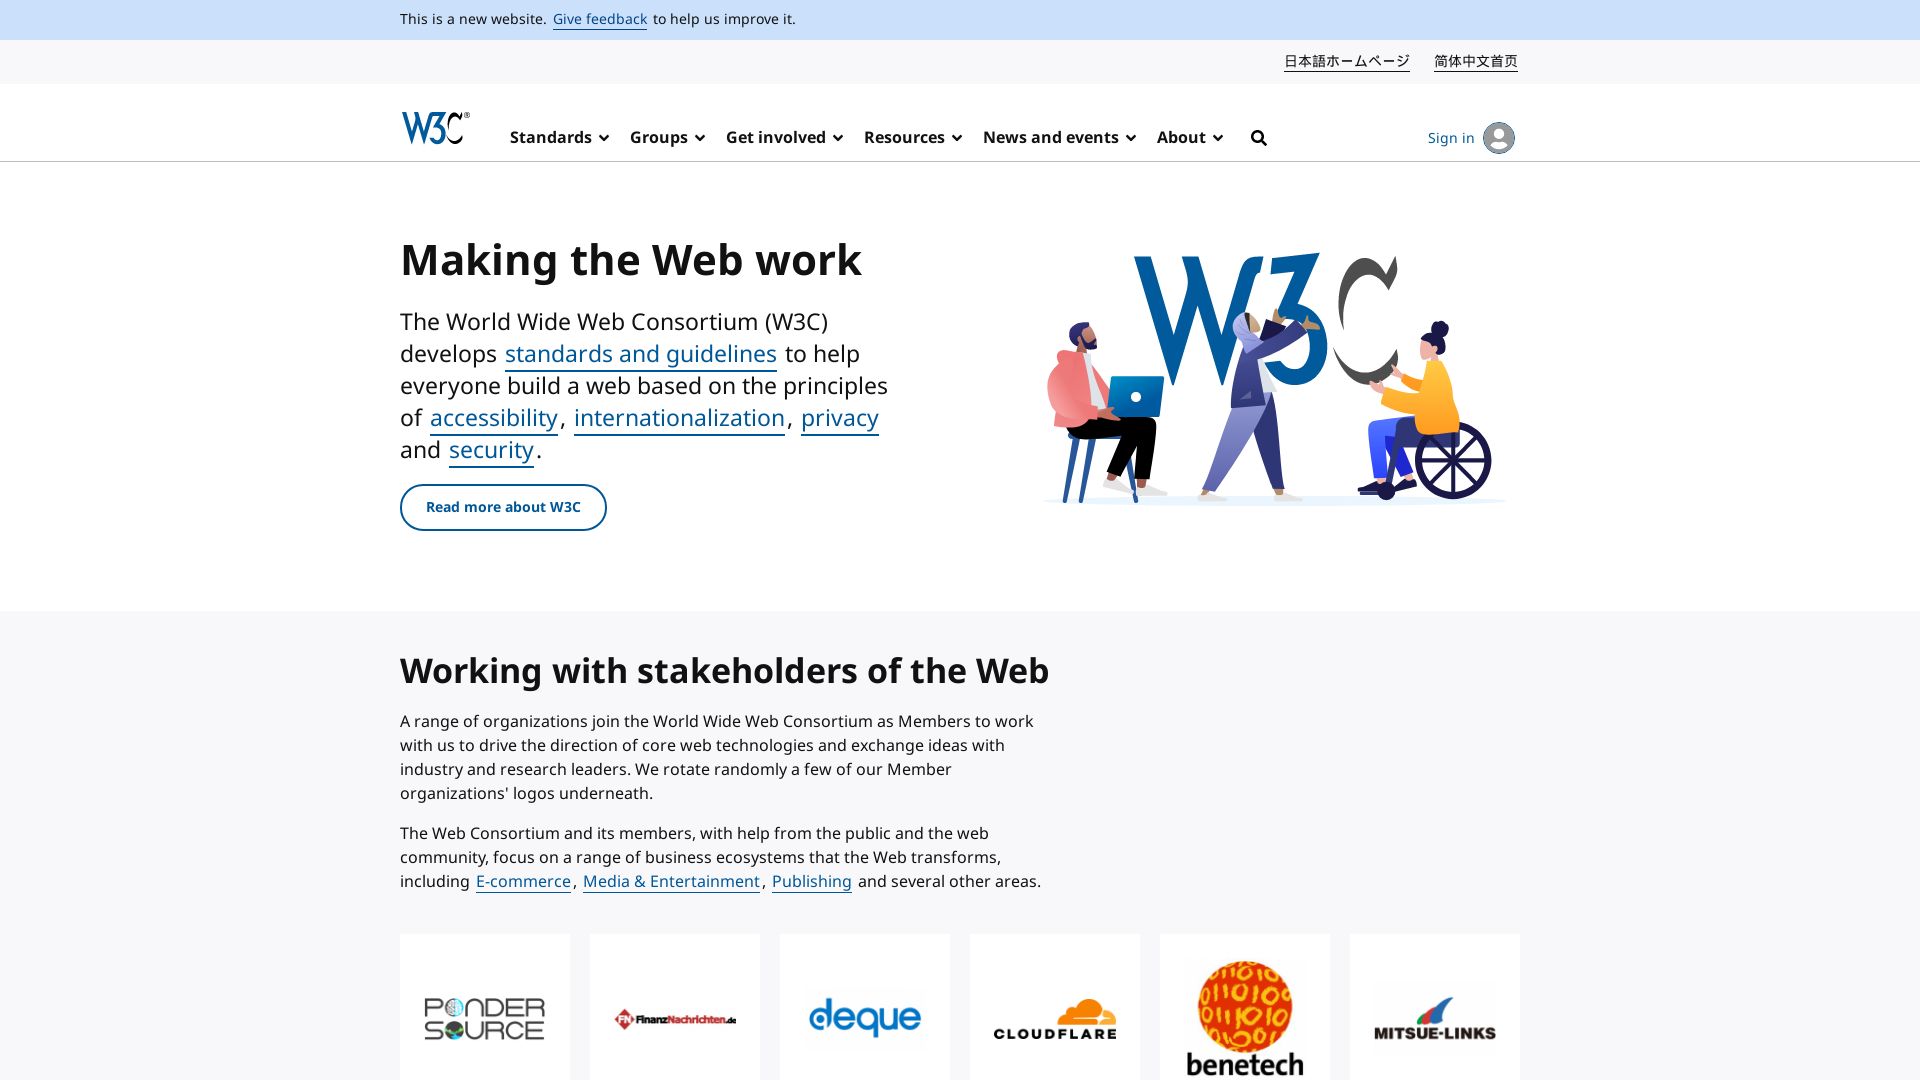 État du site web w3.org est   EN LIGNE